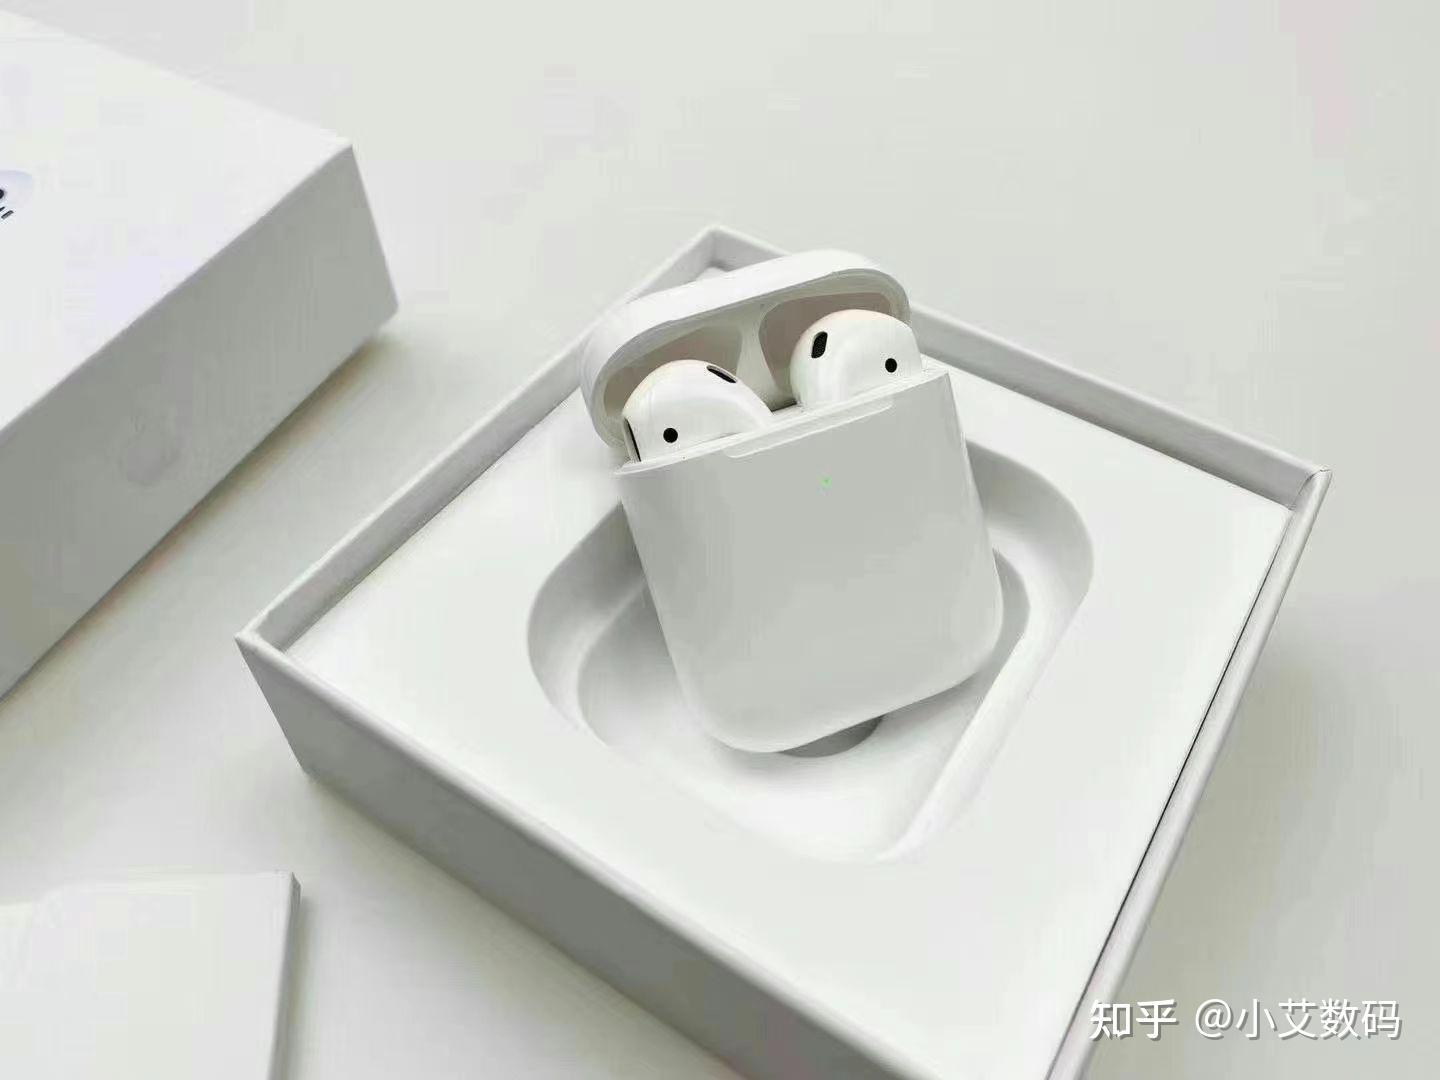 介绍一下苹果蓝牙耳机二代华强北顶配版本